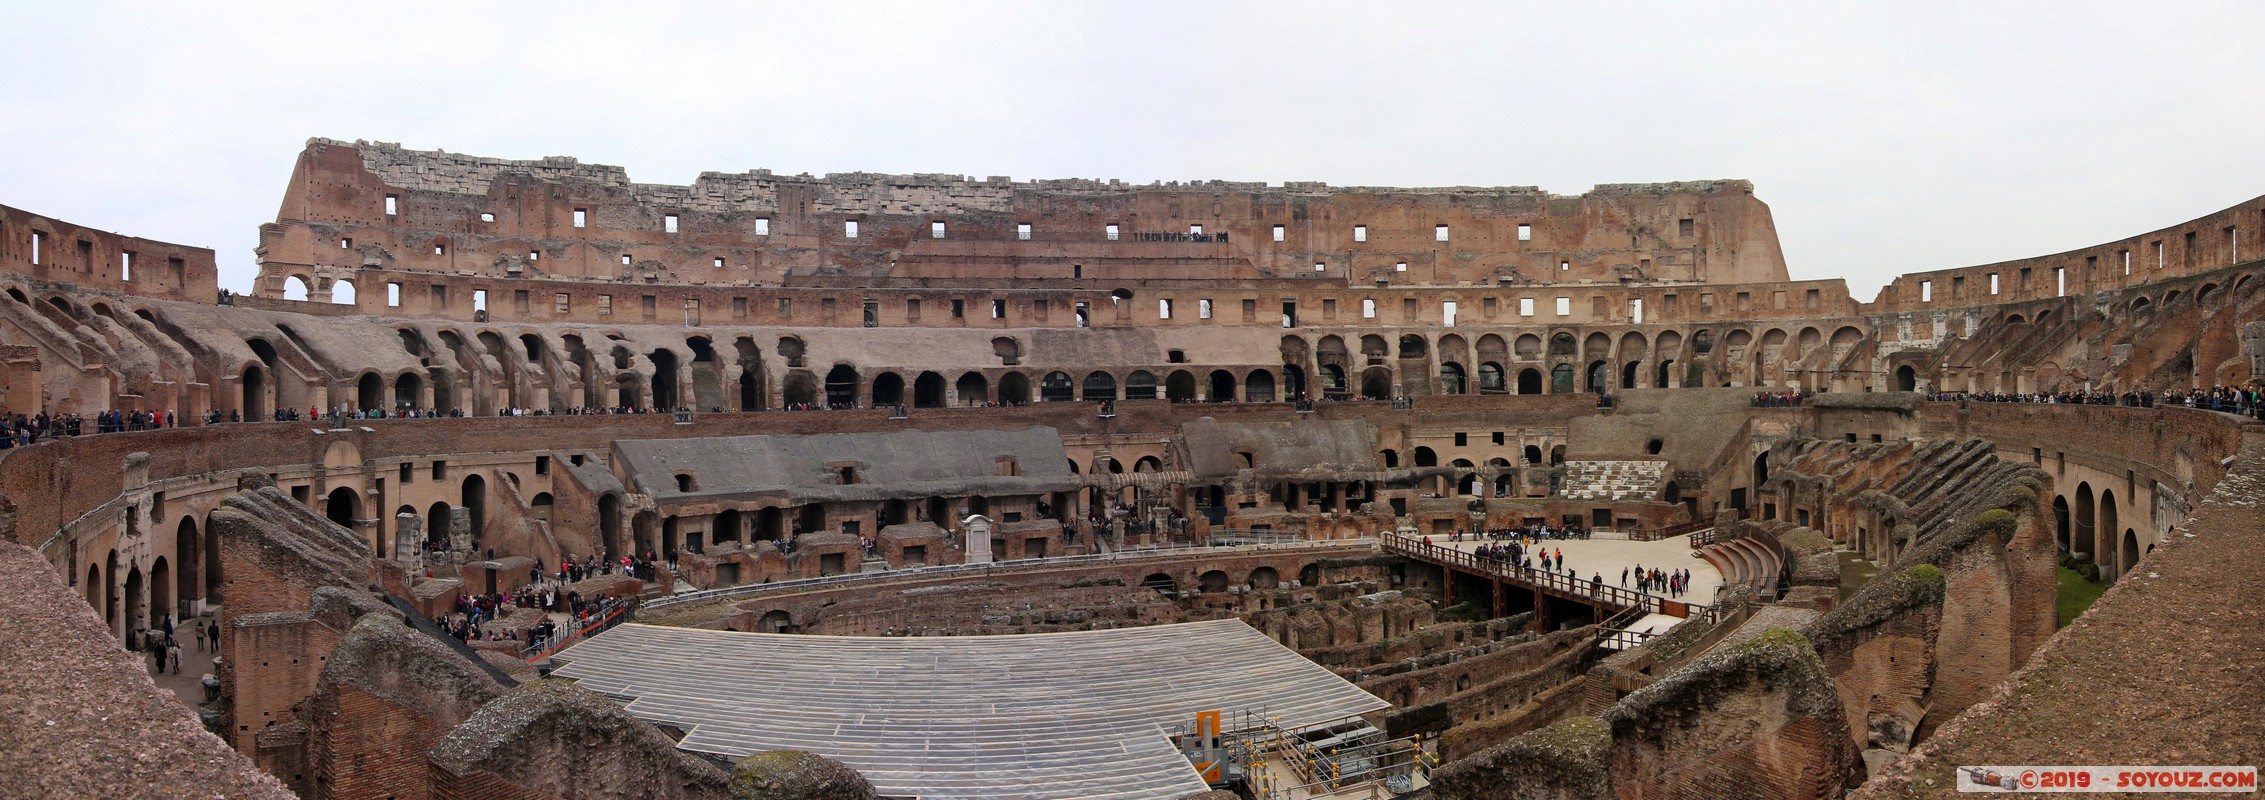 Roma - Colosseo
Mots-clés: Campitelli Colle Della Valentina geo:lat=41.88986190 geo:lon=12.49197881 geotagged ITA Italie Lazio patrimoine unesco Ruines Romain Colosseo